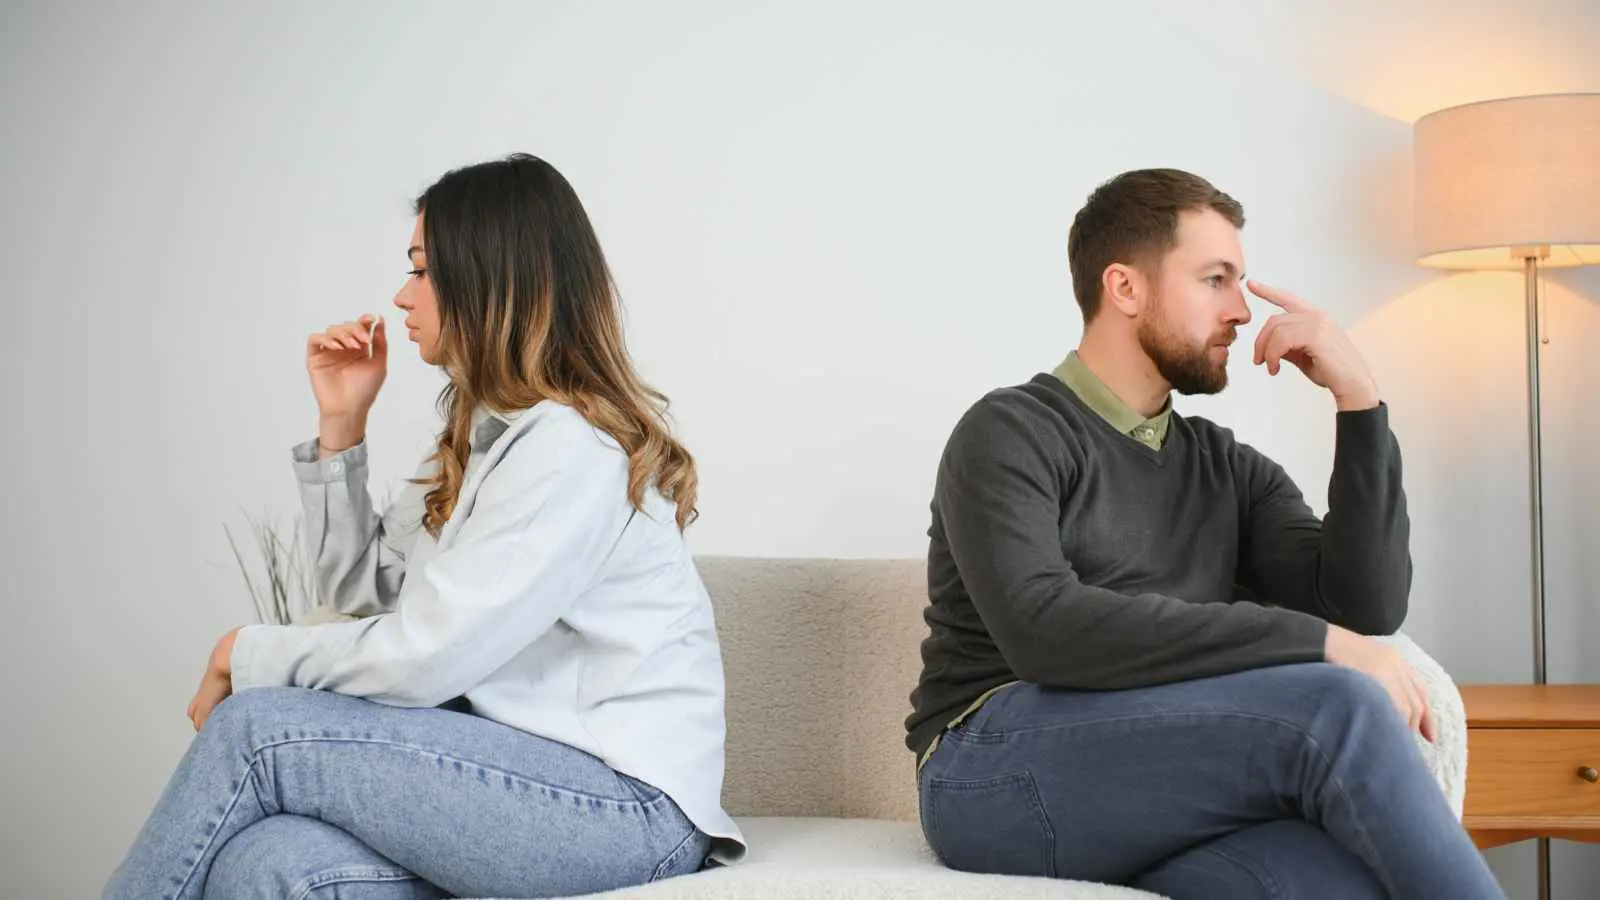 4 نصائح فعّالة للتعامل مع تهديدات الطلاق